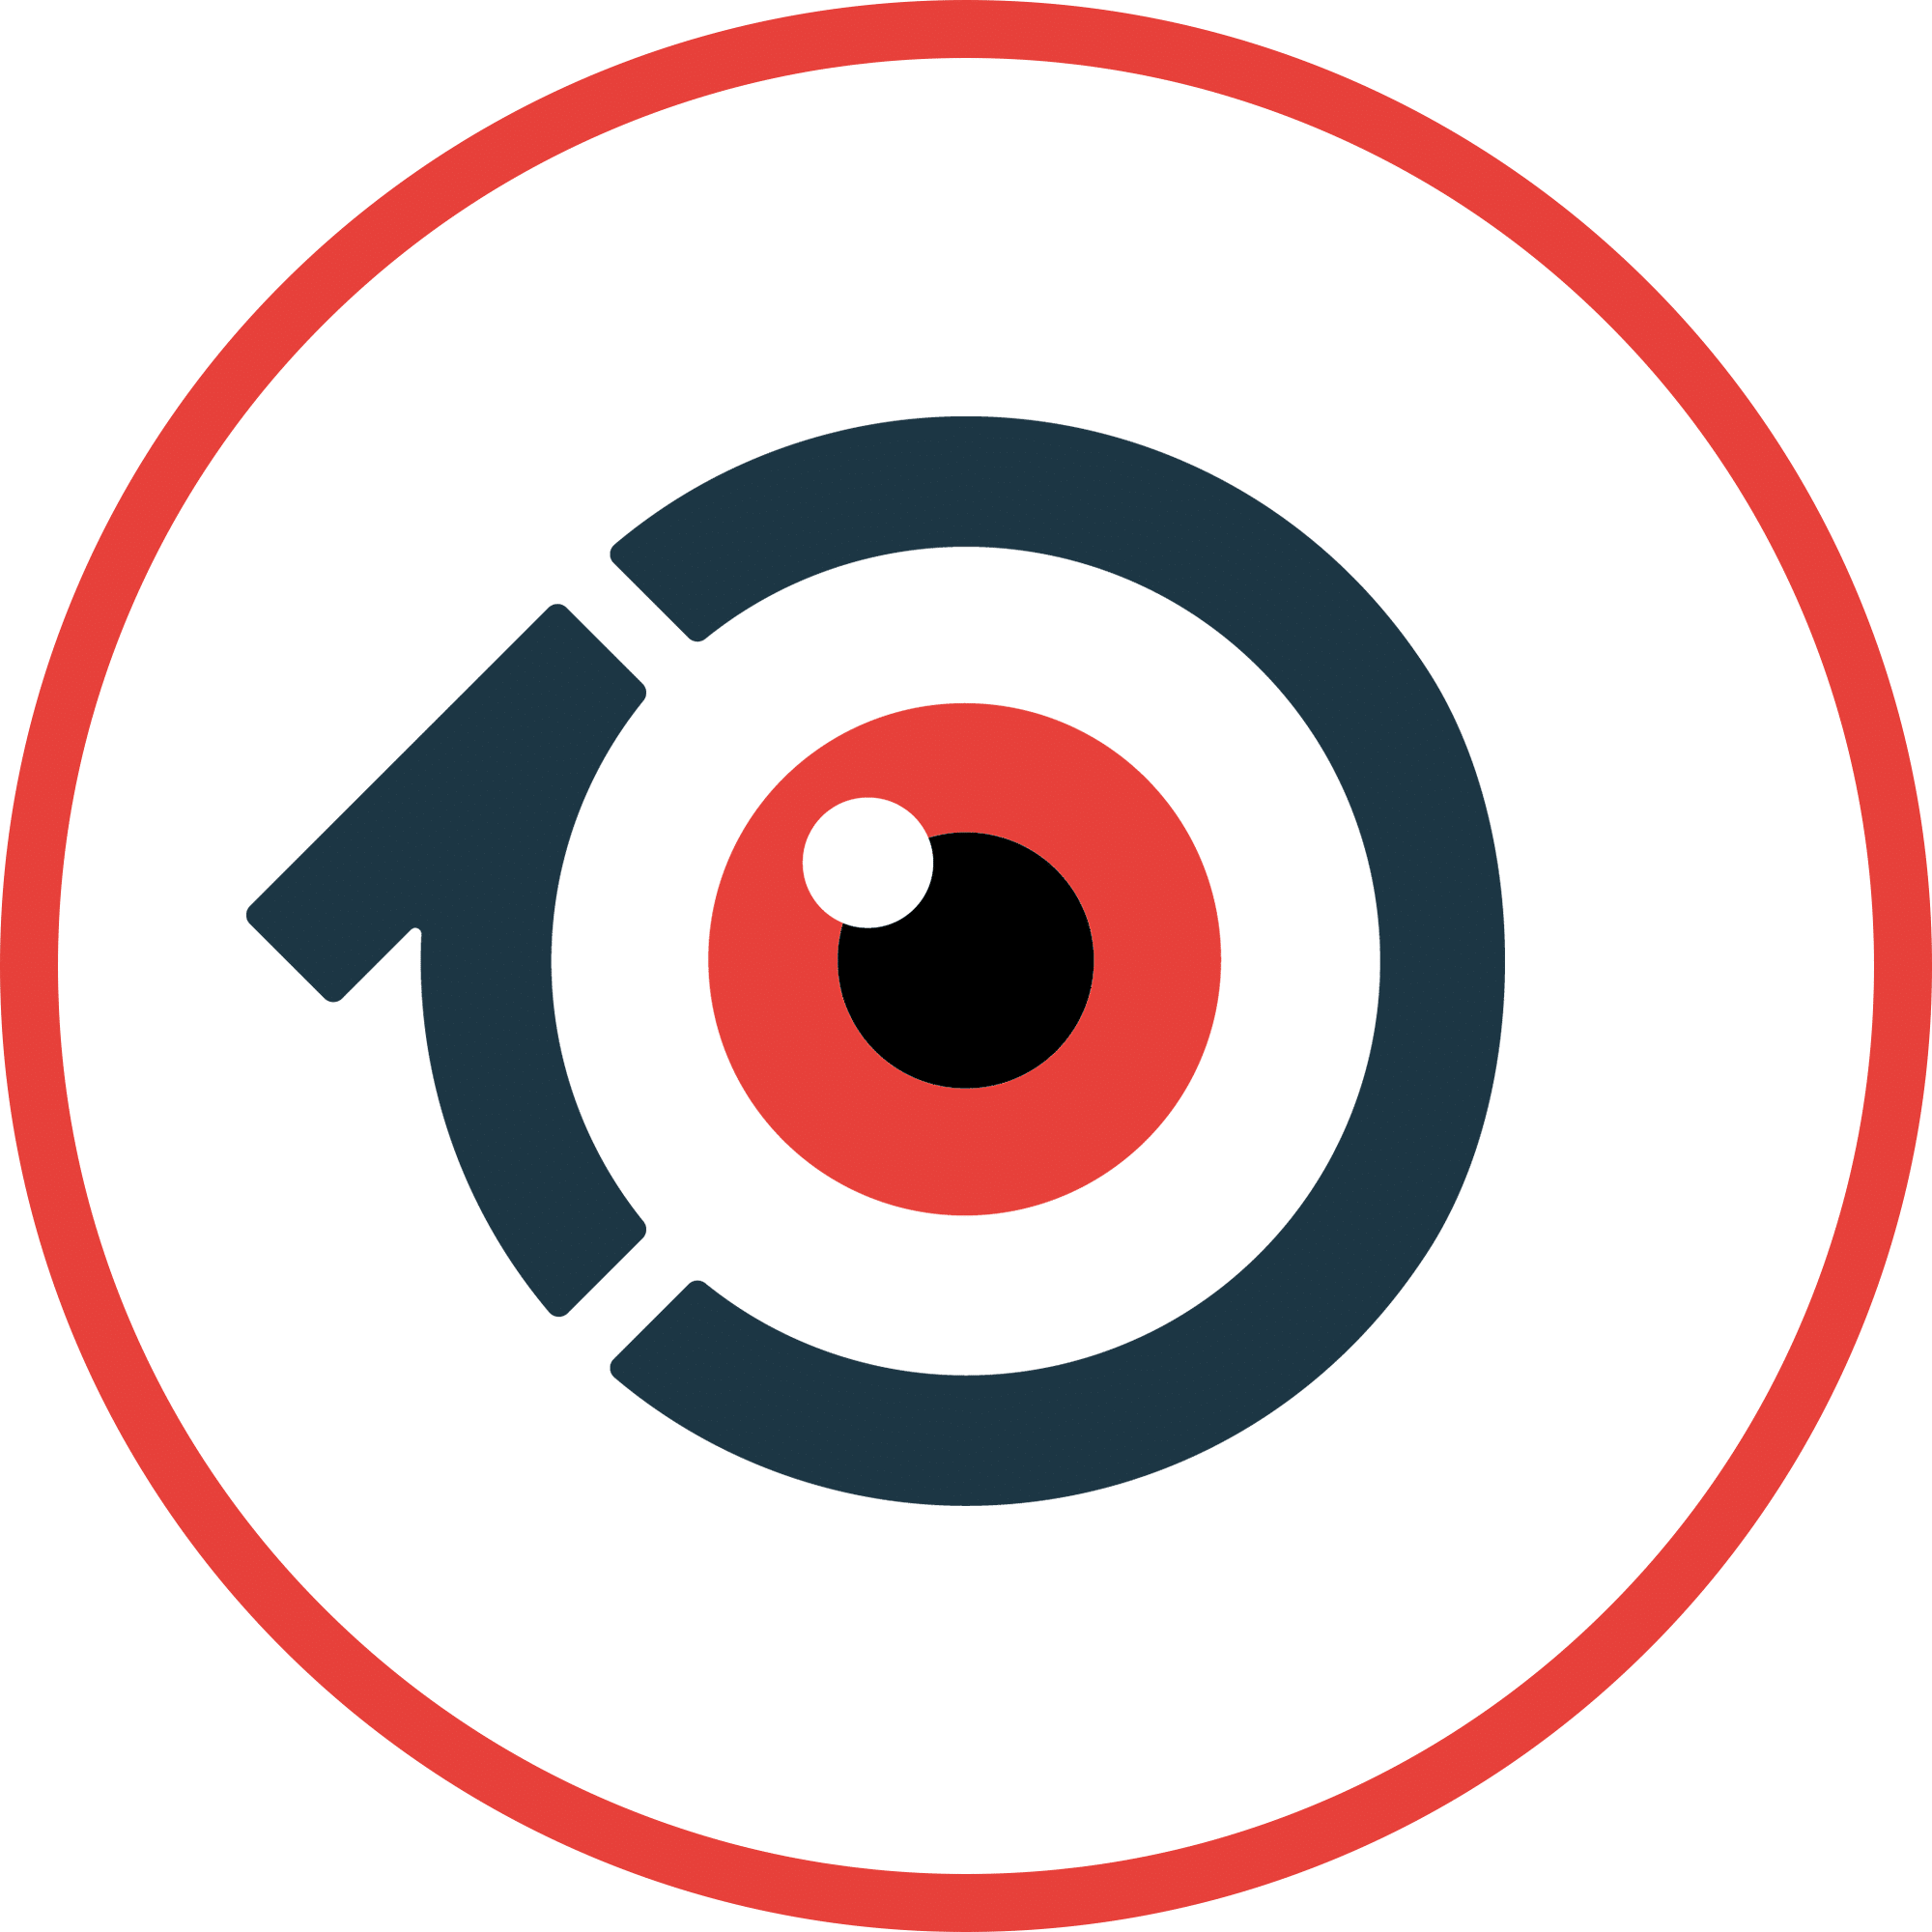 Ten Eyes media